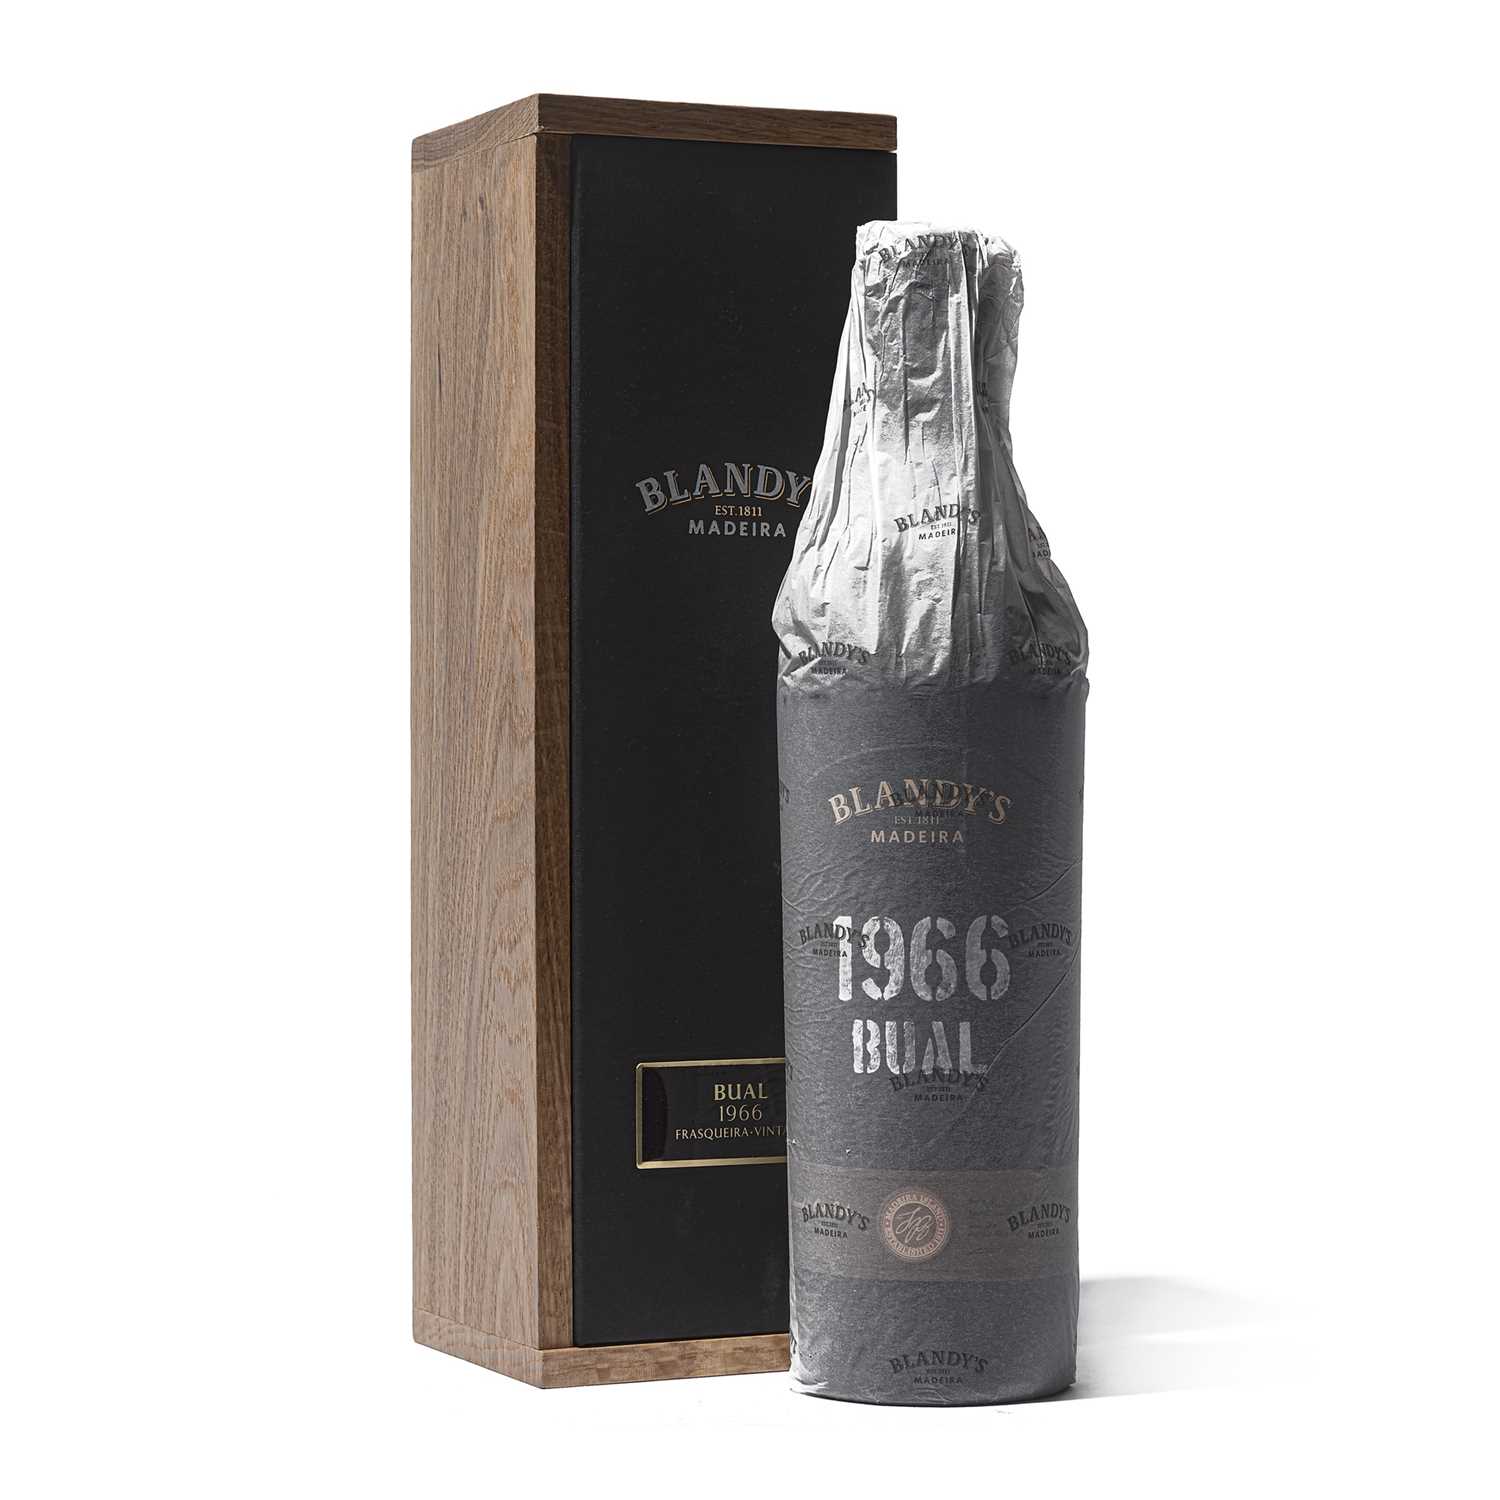 Lot 11 - 1 bottle 1966 Blandy Bual